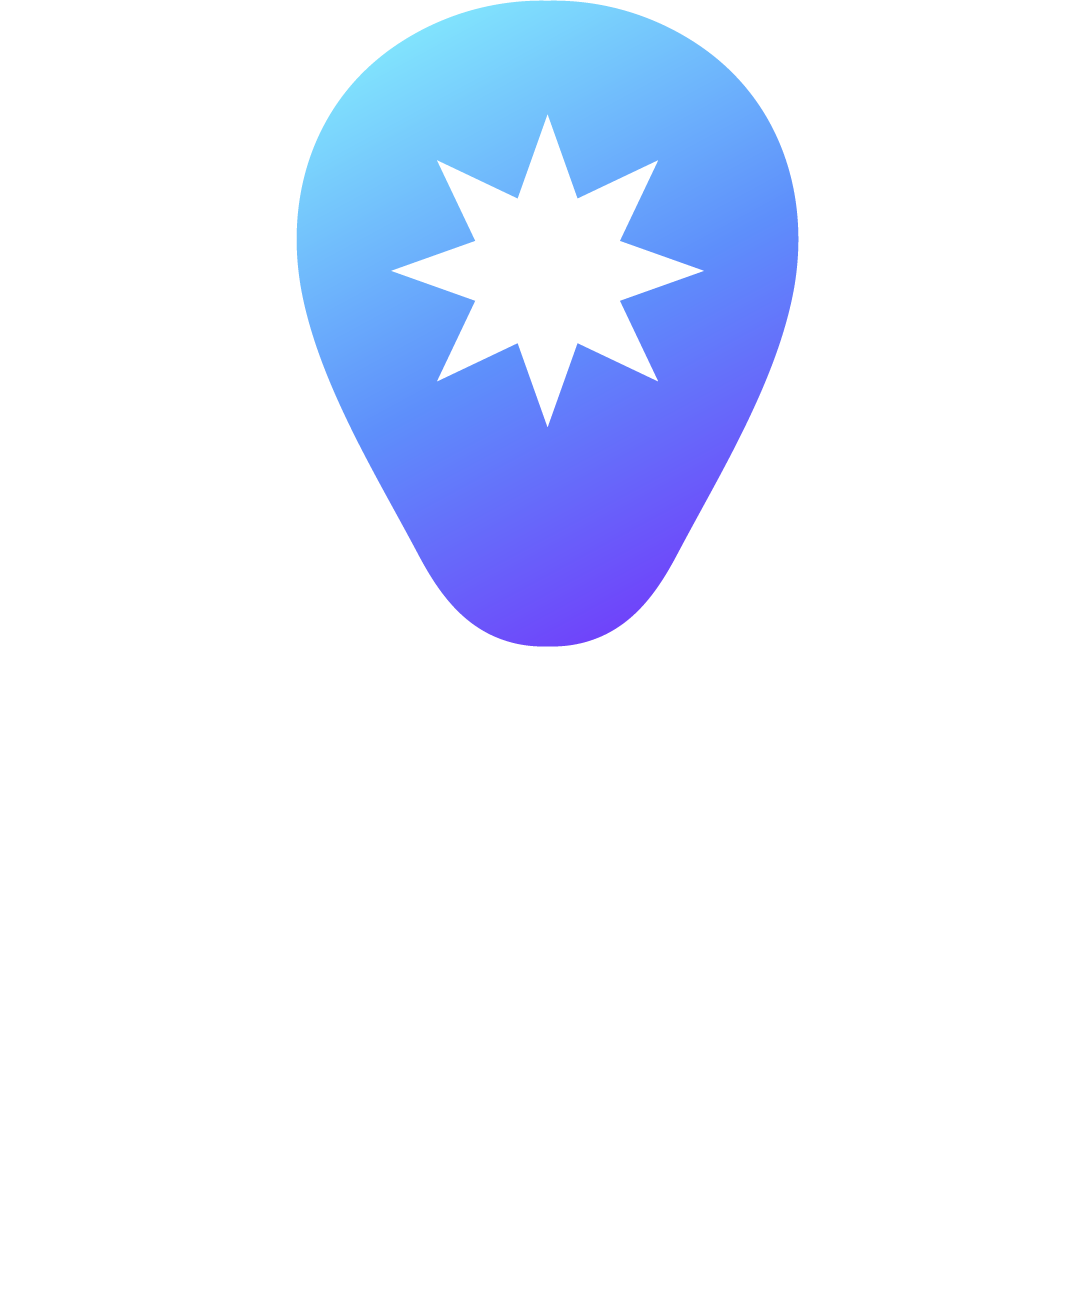 Student Republic